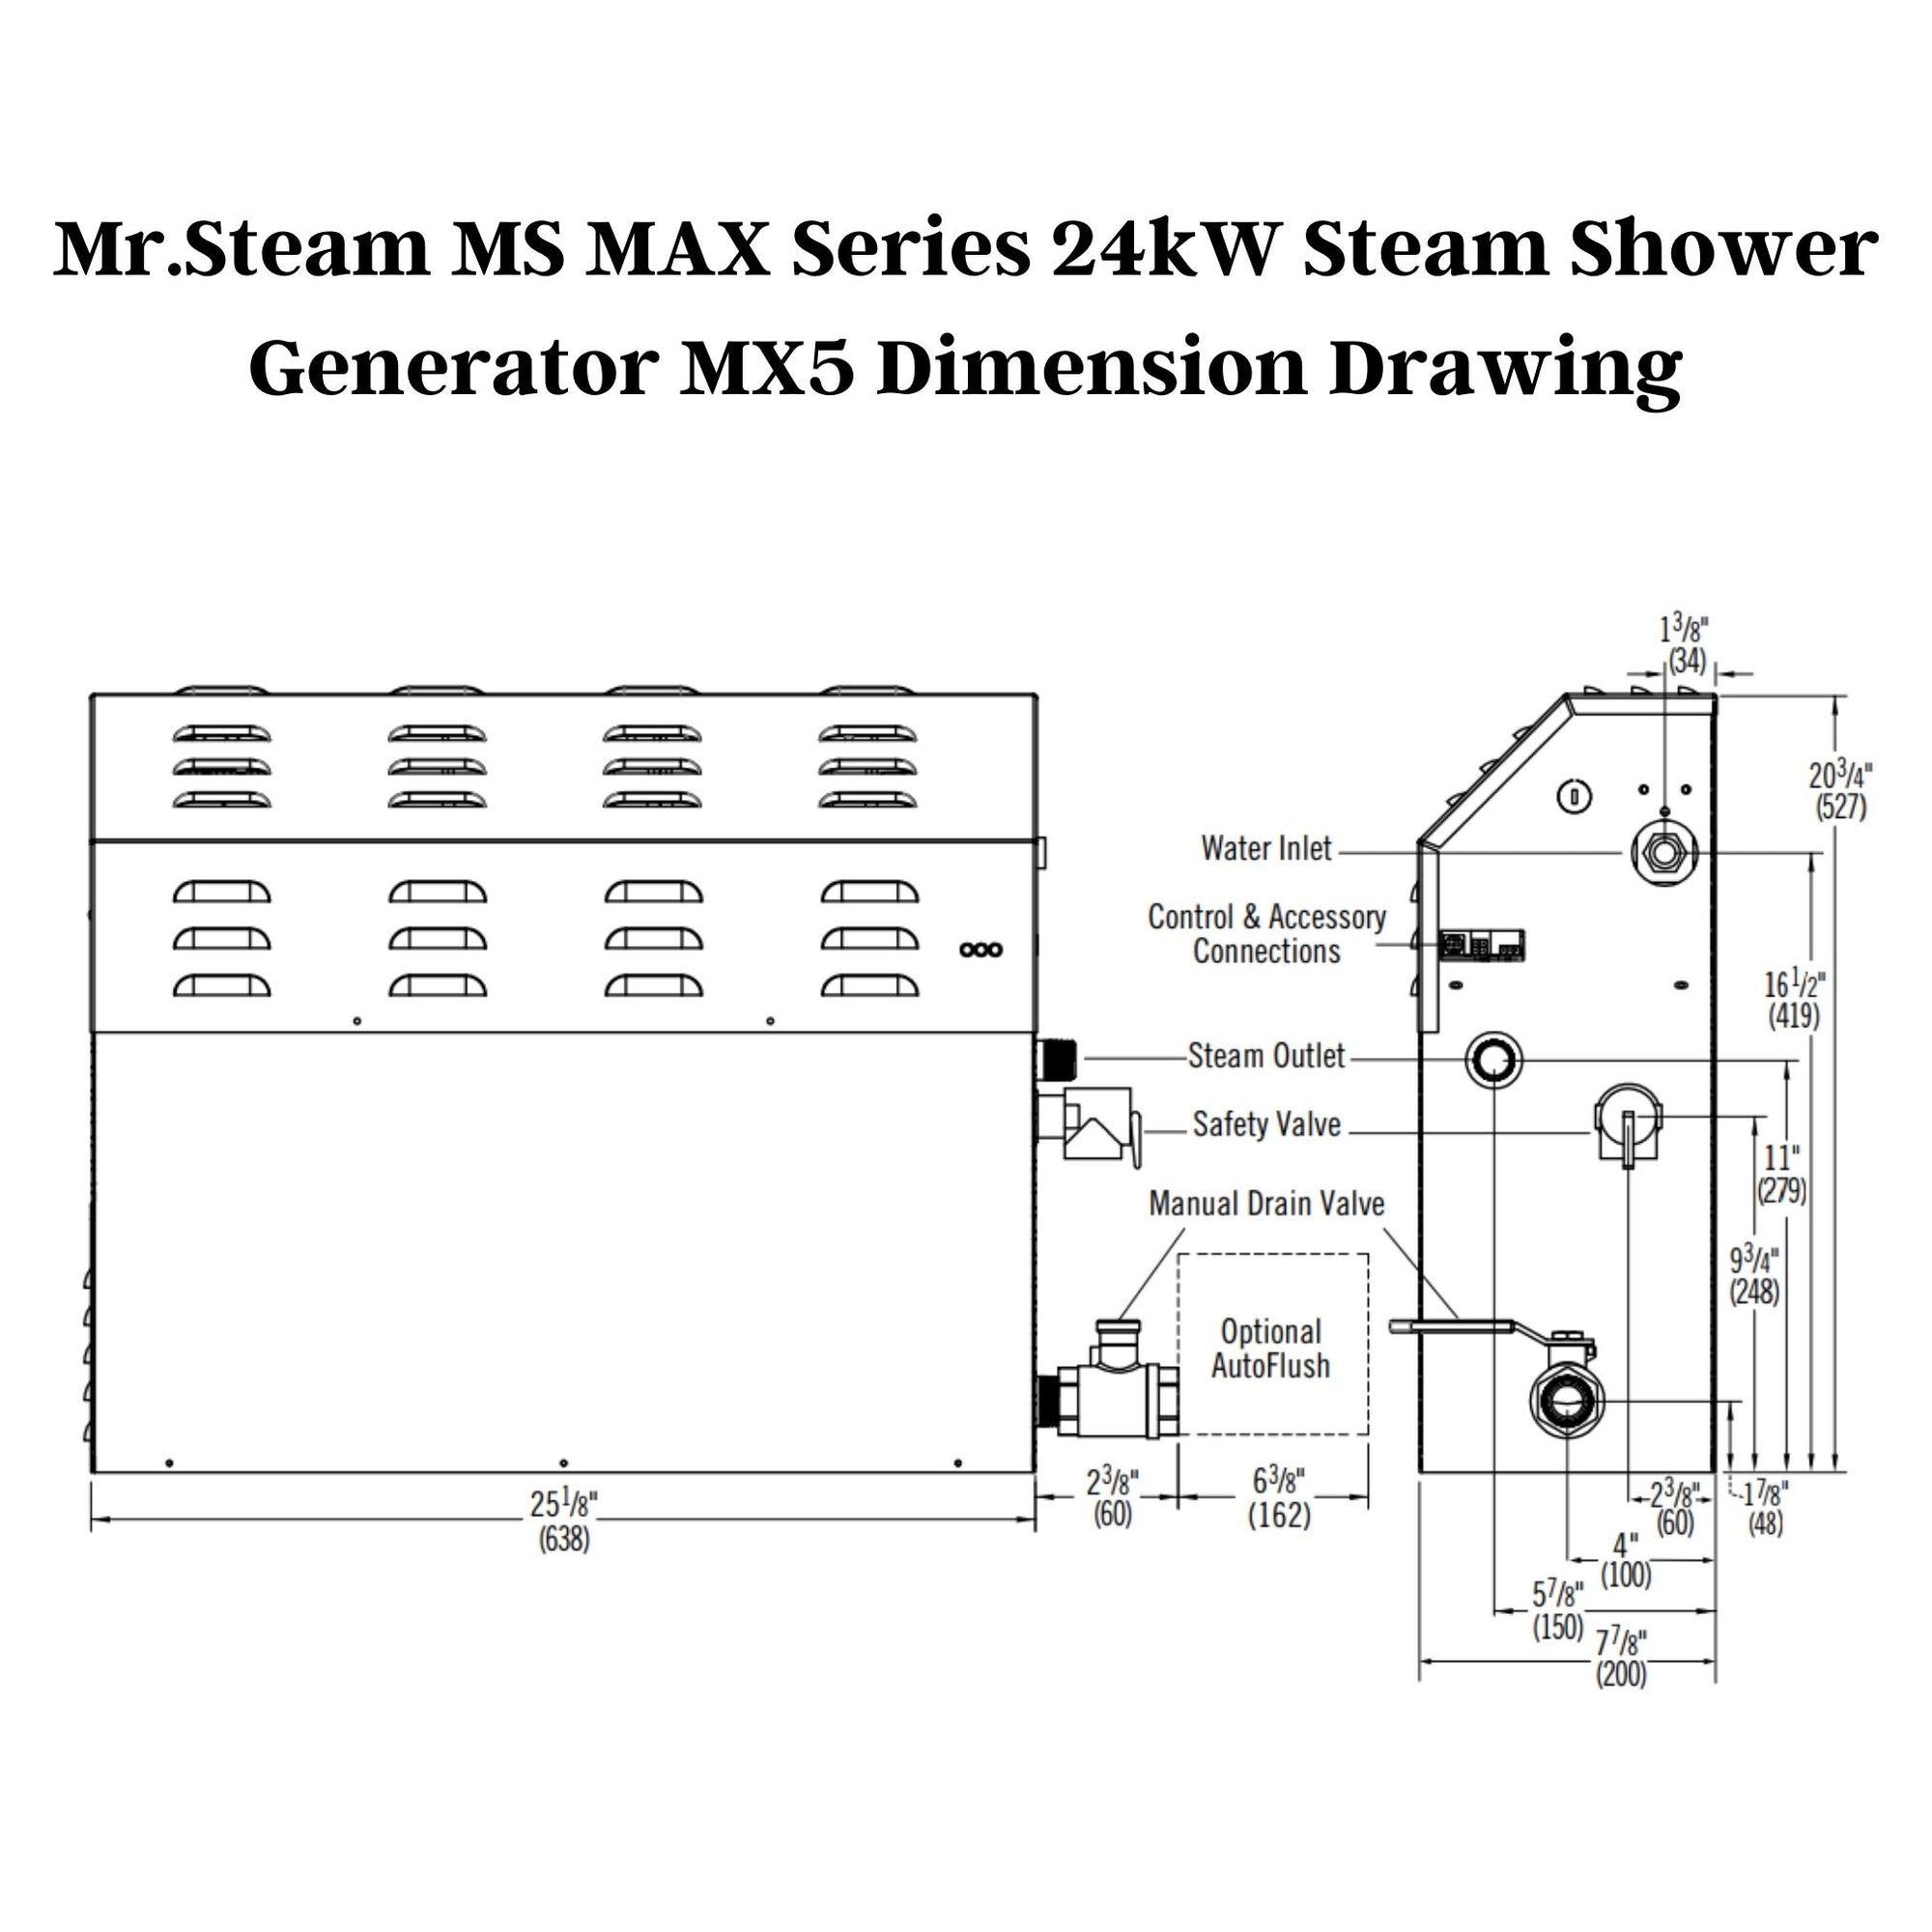 Mr. Steam 24kW MS MAX Series Steam Shower Generator MX5